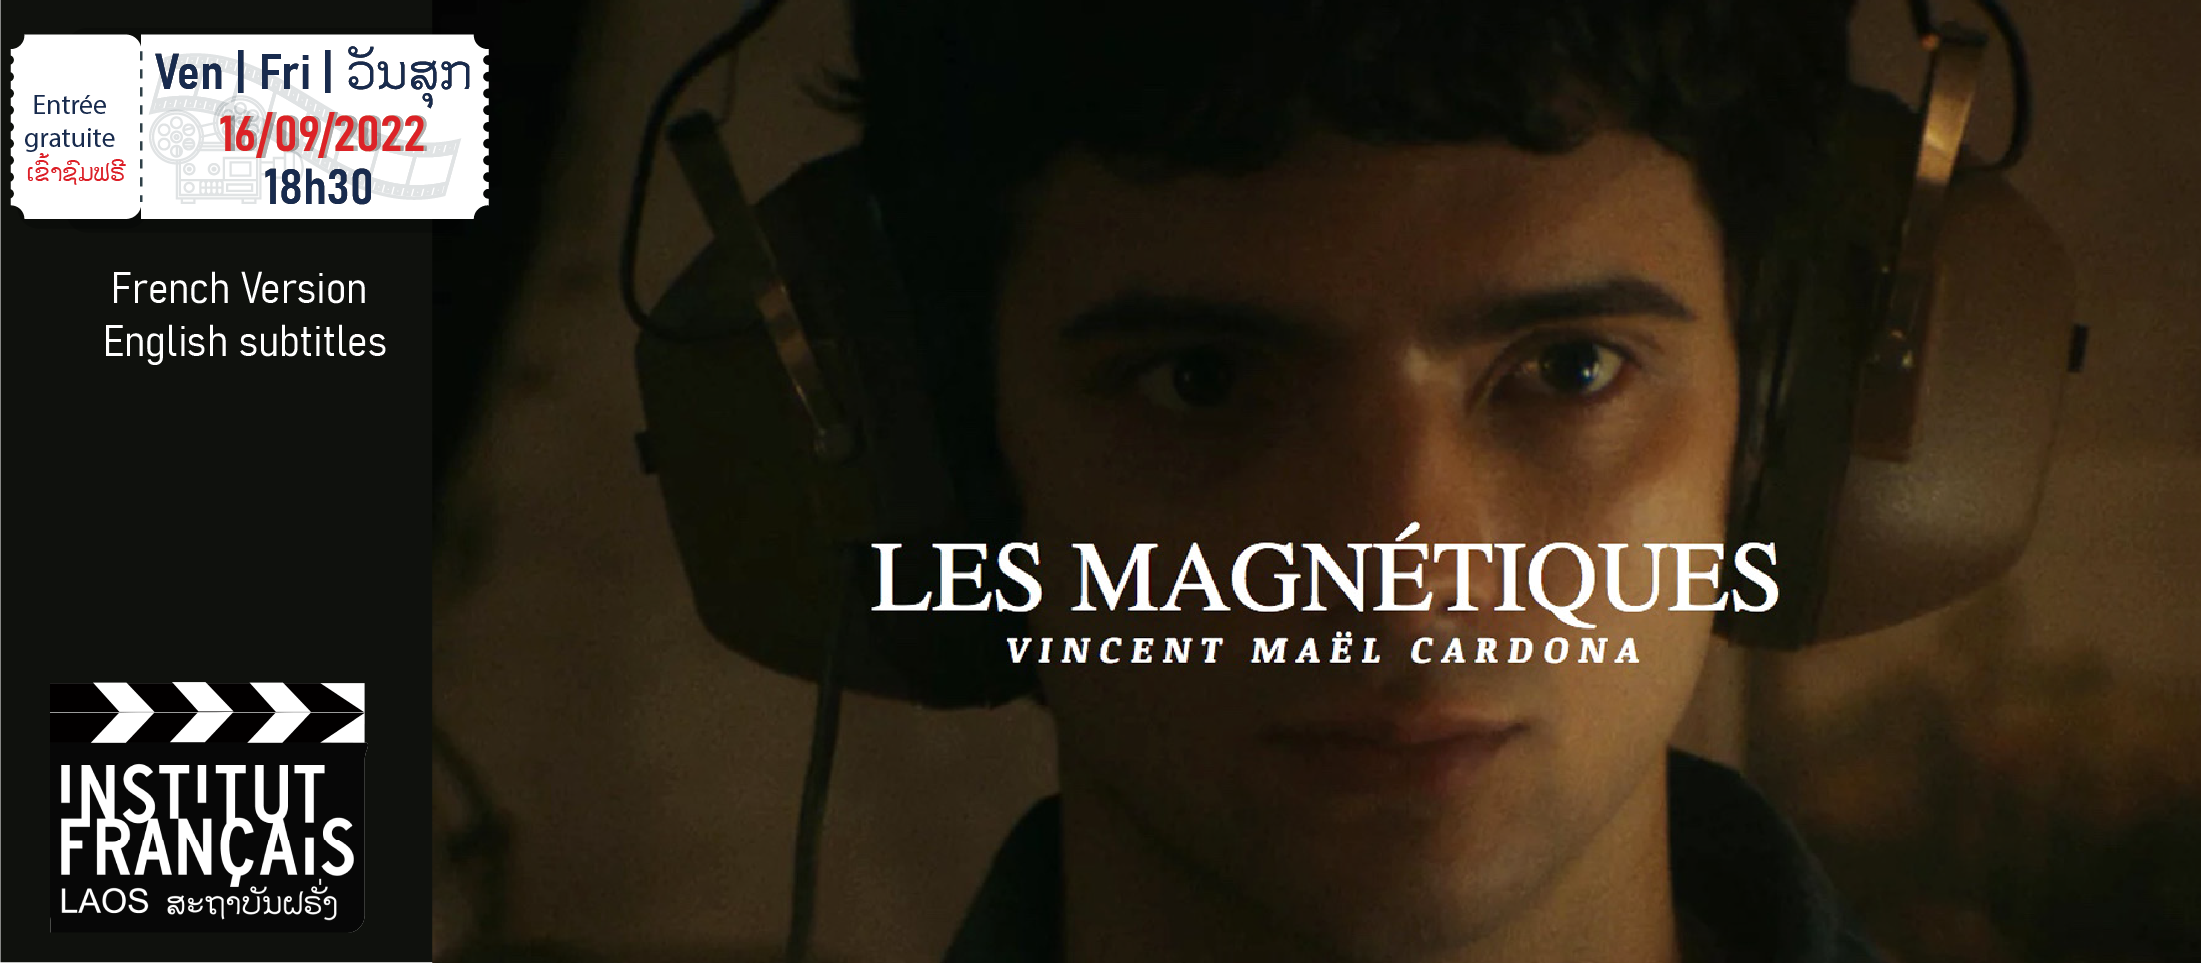 Cinema " Les magnétiques "